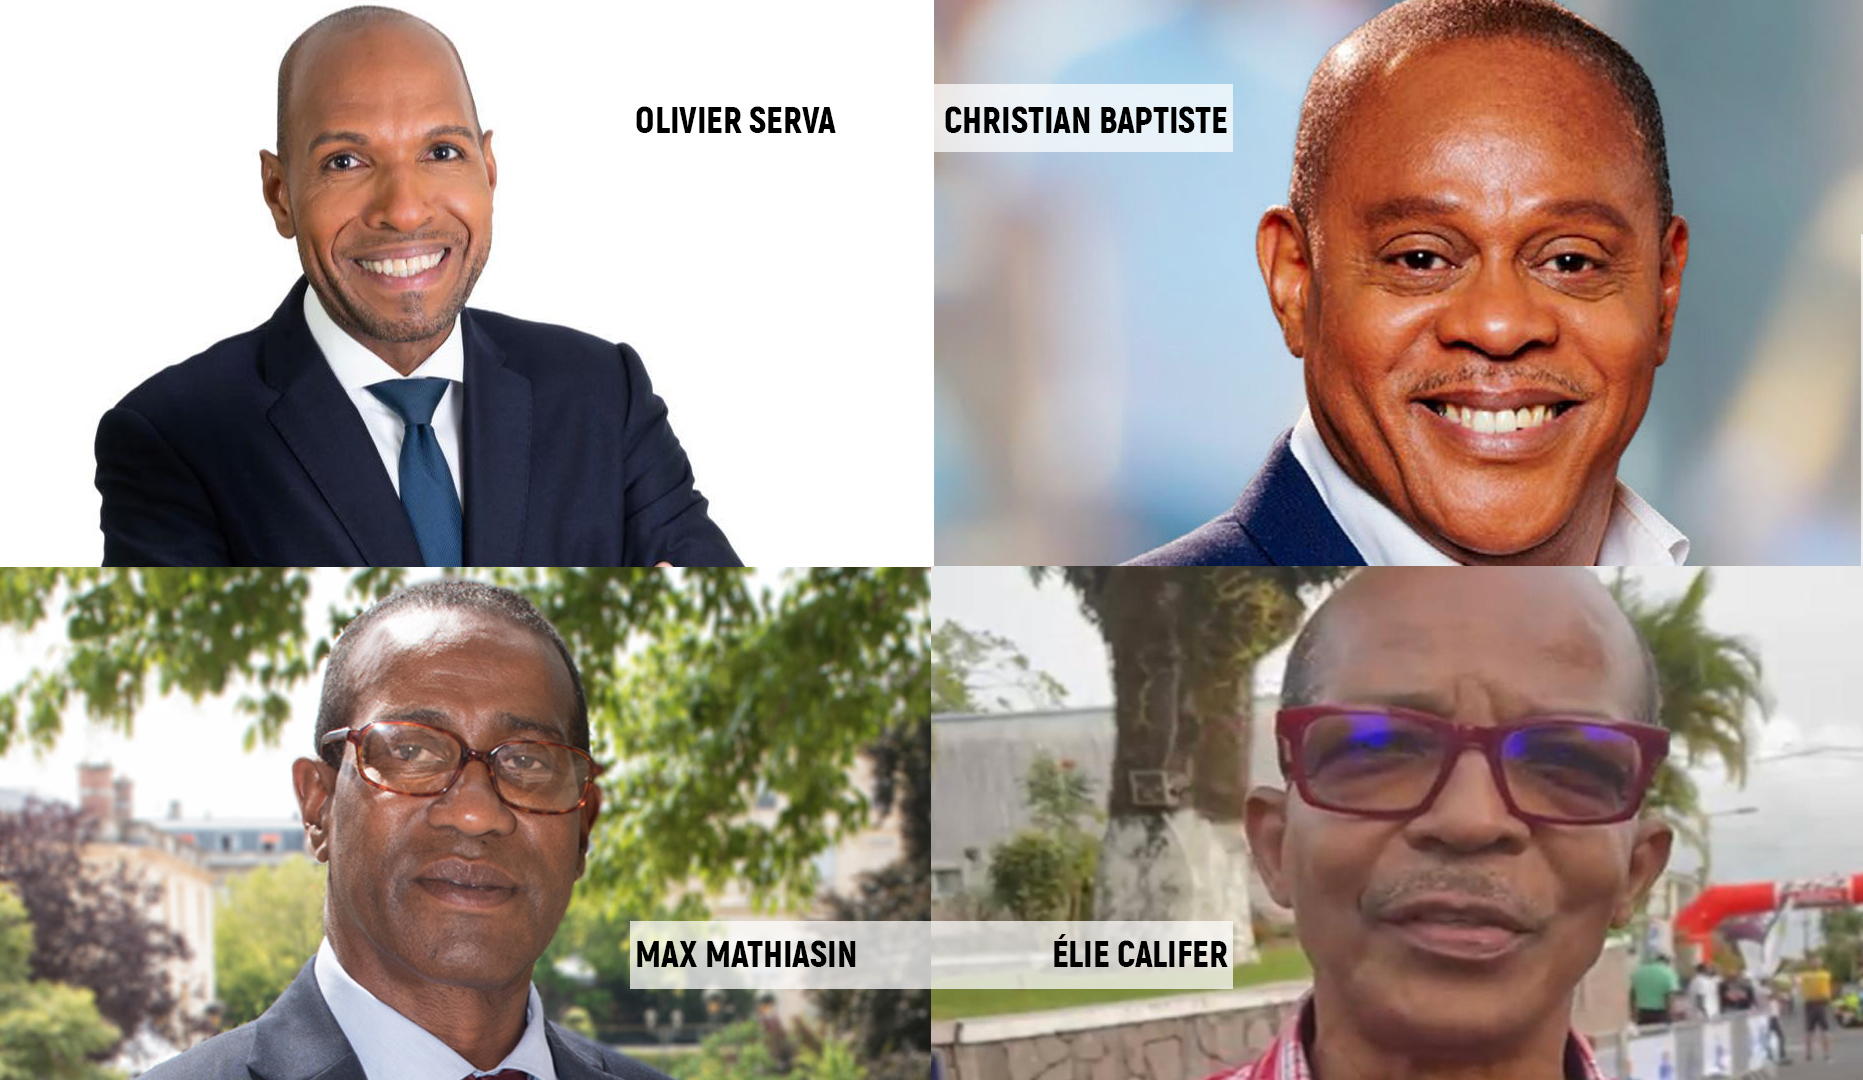     Législatives 2022 : la Guadeloupe compte 2 nouveaux députés

